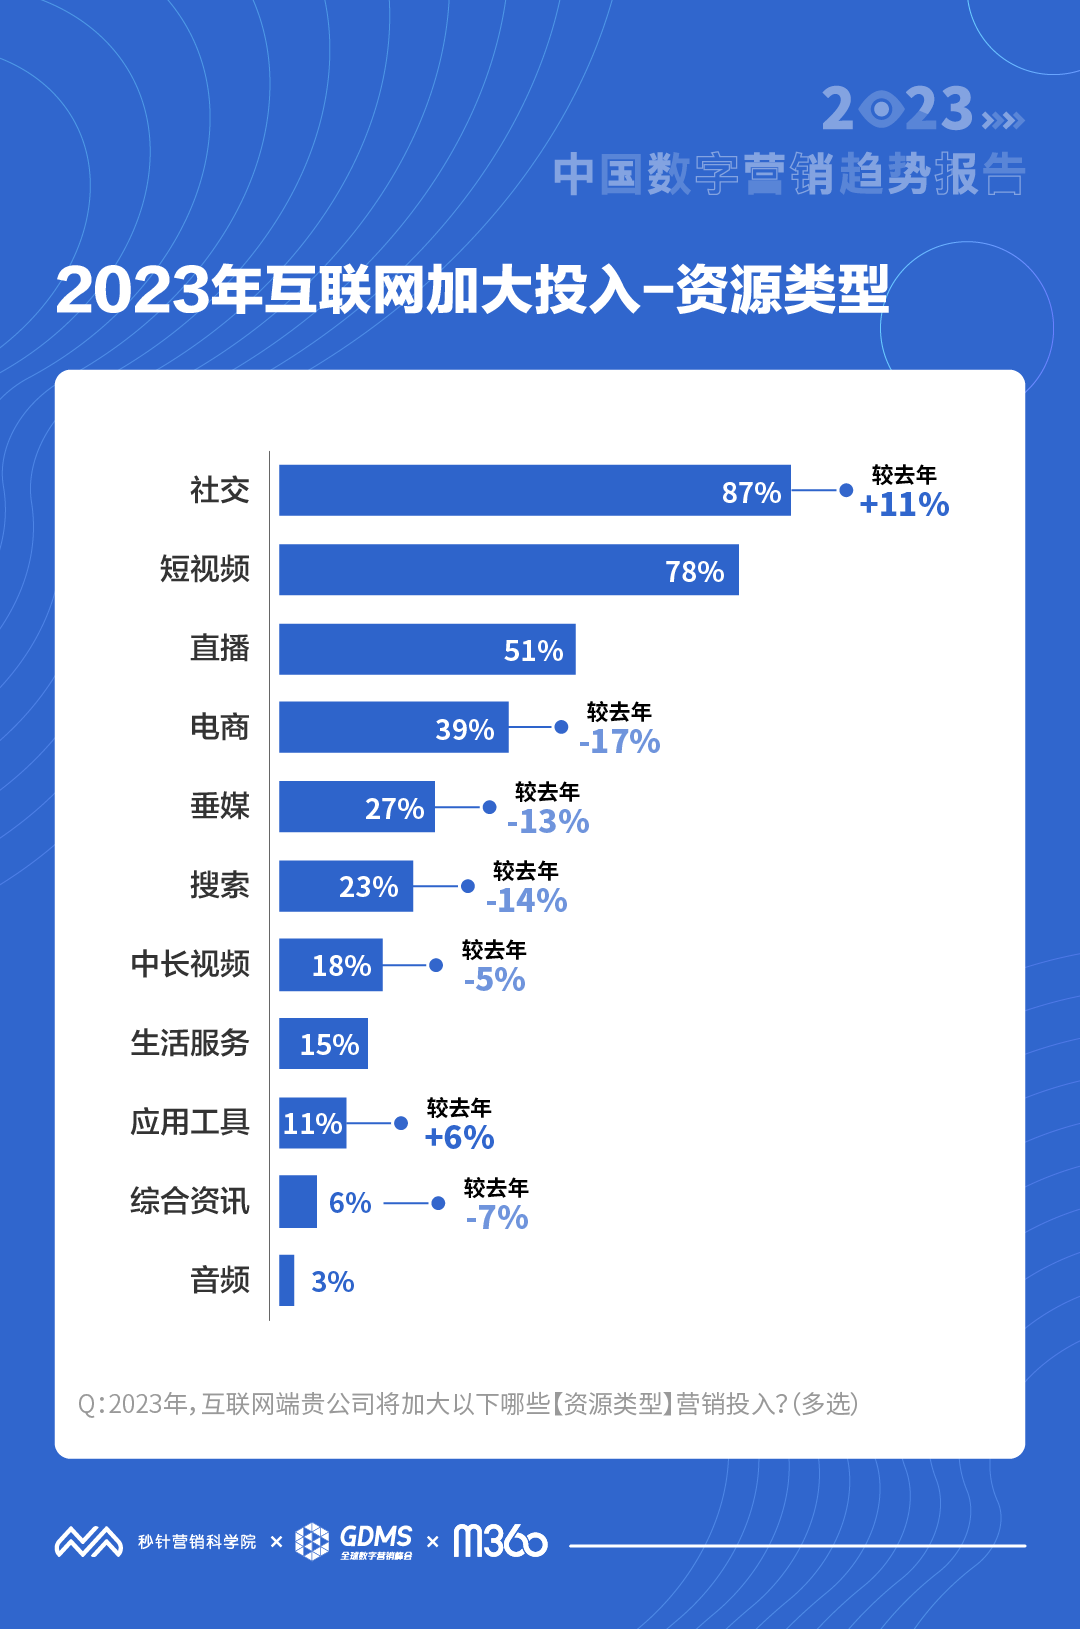 2023中国营销投资期望即将复苏 资讯 第4张